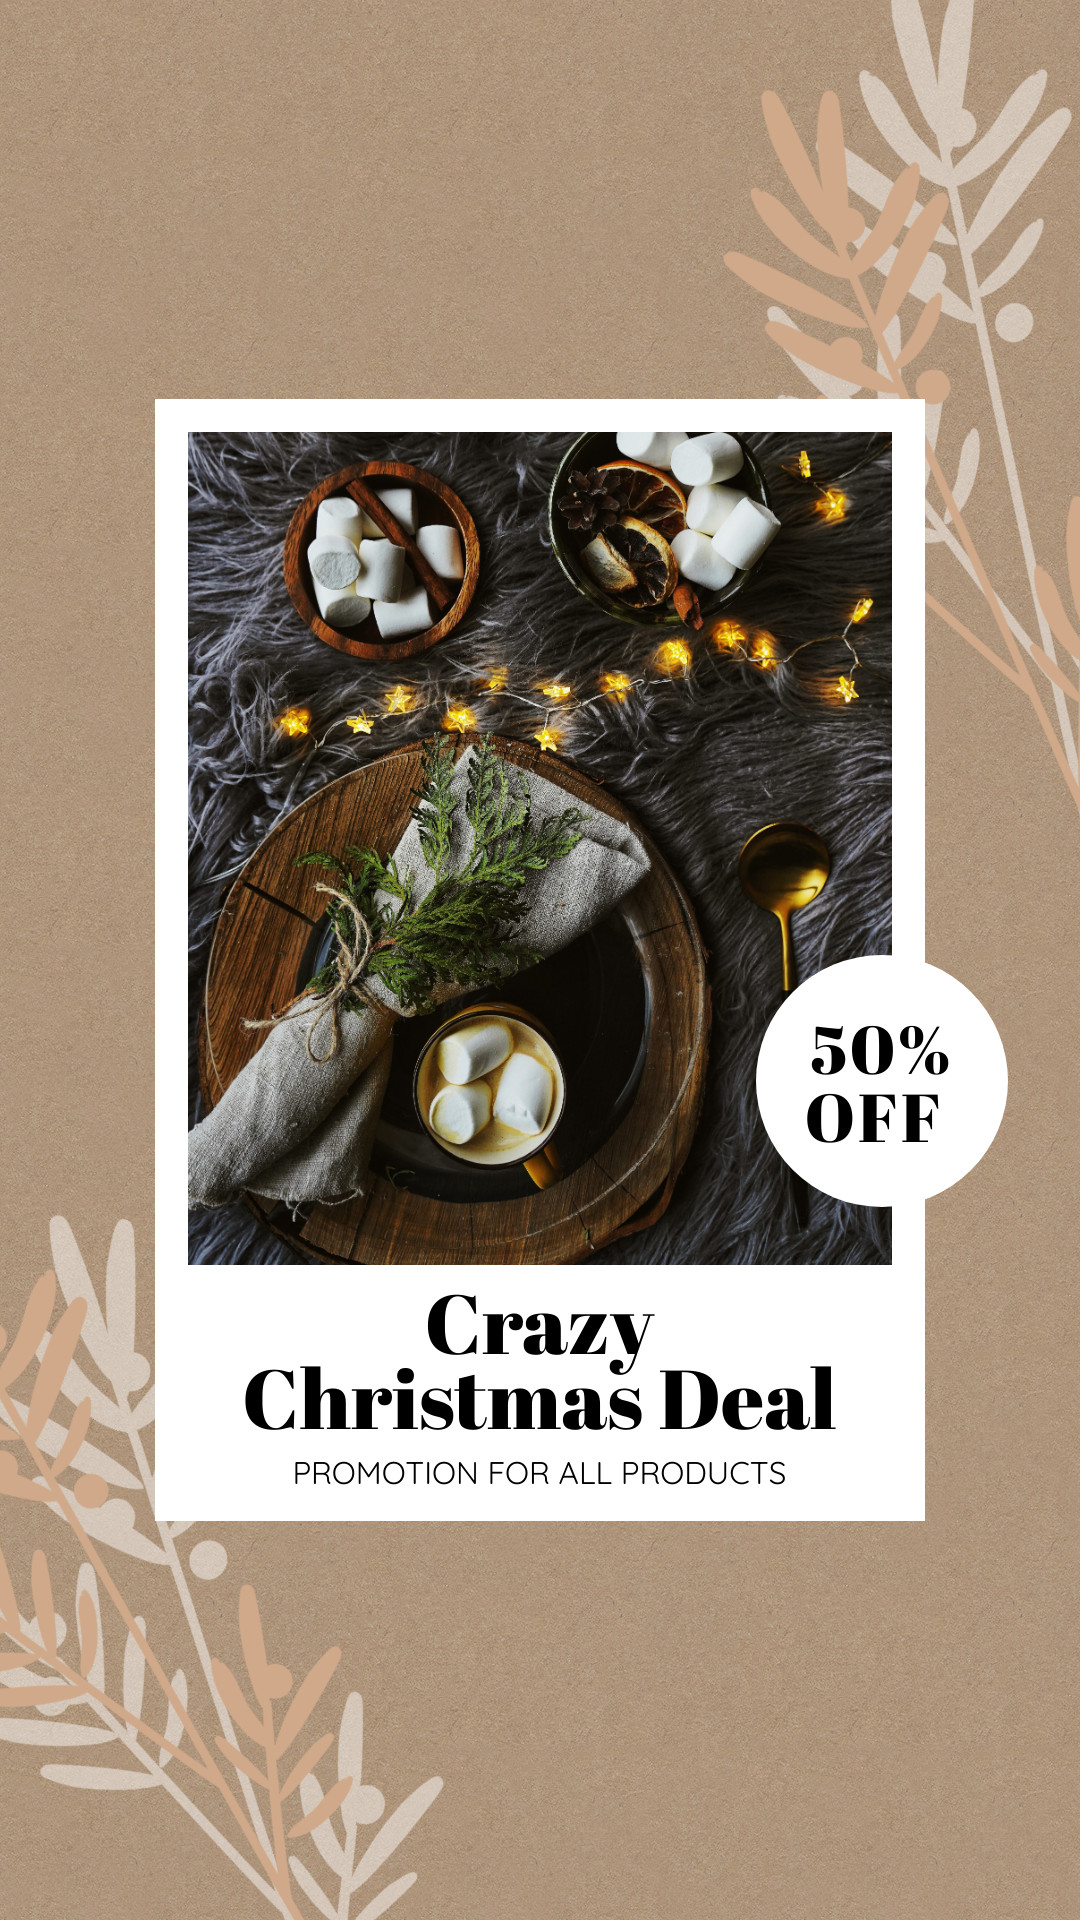 Cozy Crazy Christmas Deal